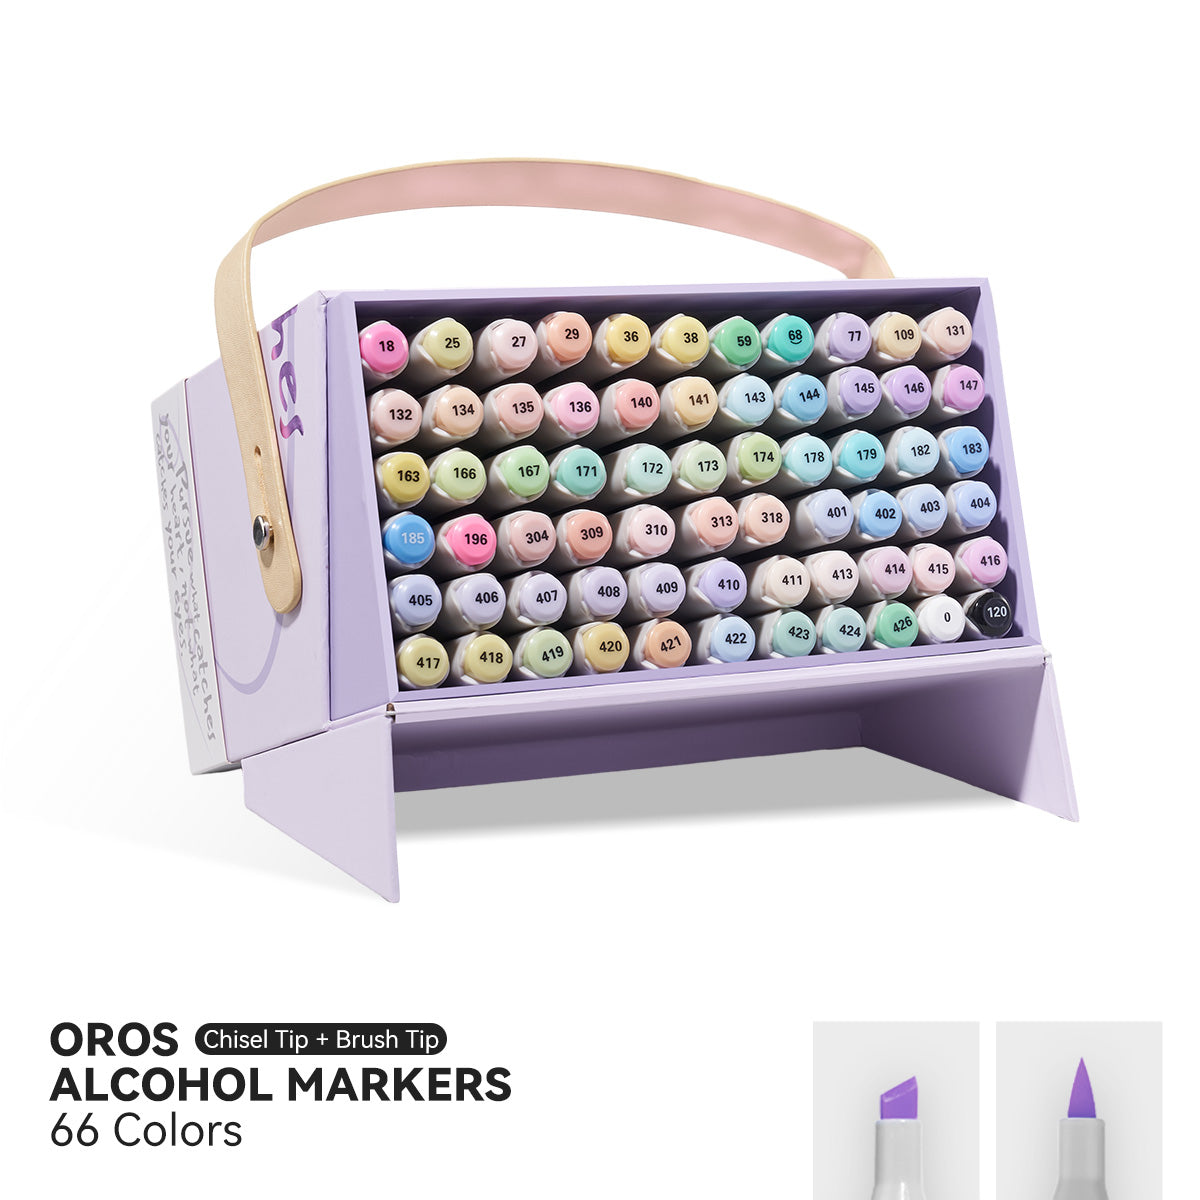 Arrtx OROS 66 Pastel Colors Alcohol Markers Paint Pen Set